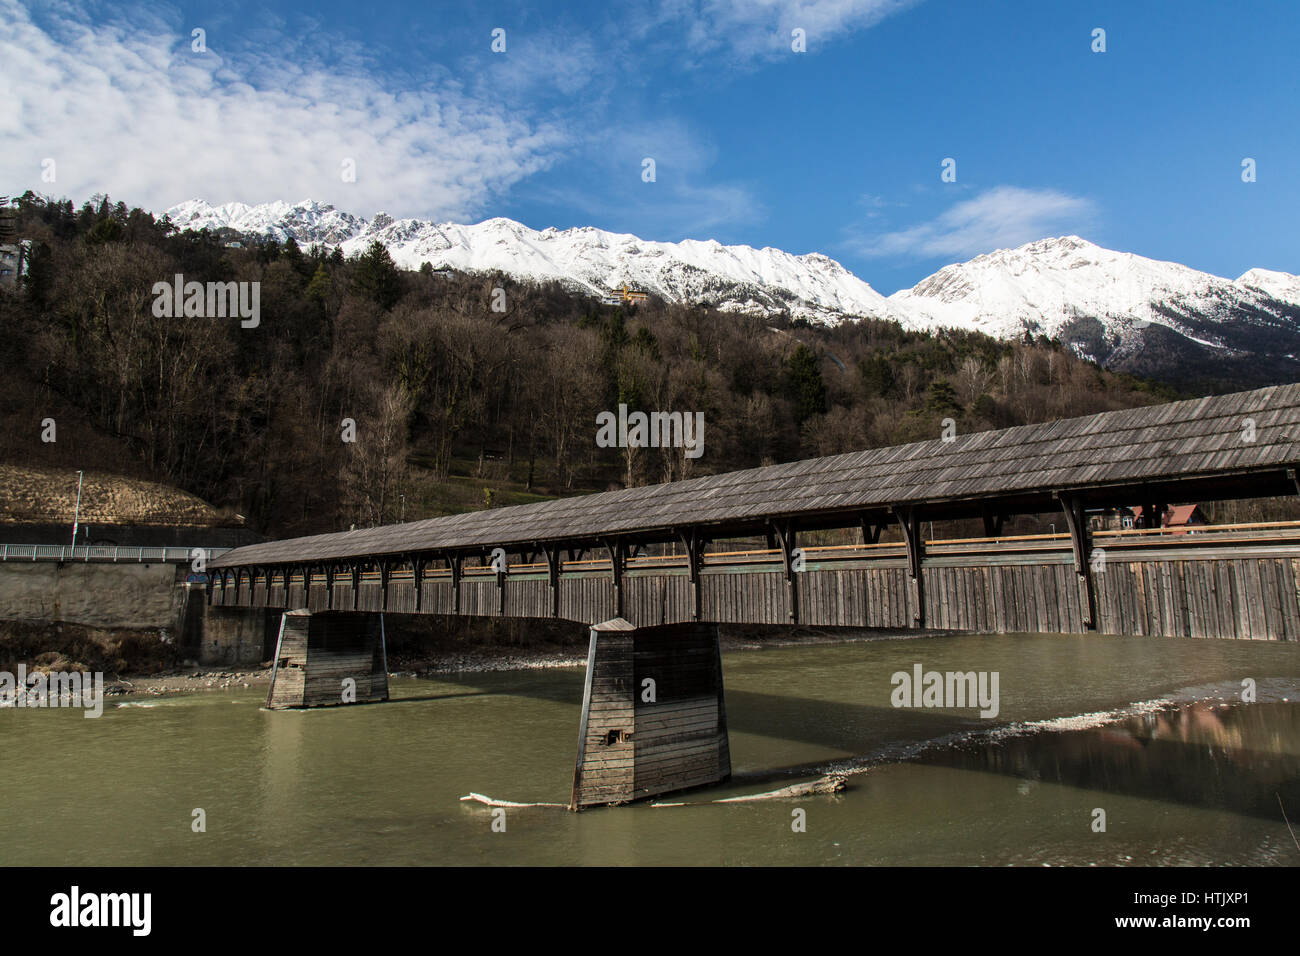 Passerella Coperta ponte che attraversa il fiume Inn a Innsbruck in Austria, con montagne delle Alpi austriache in background. Foto Stock